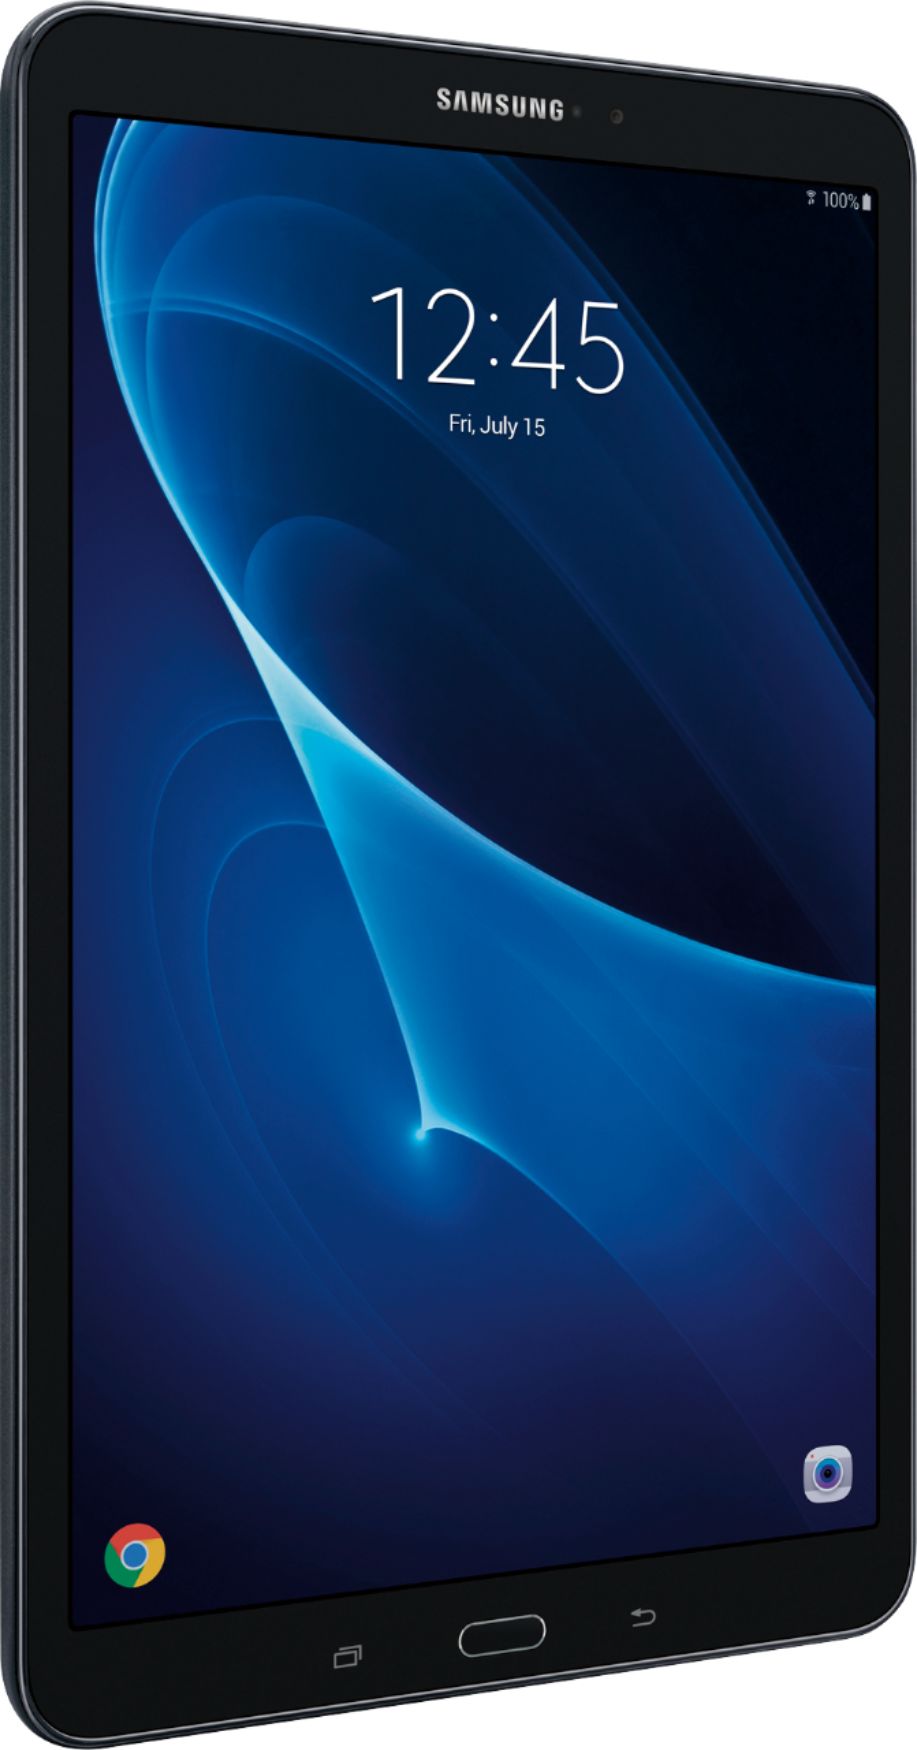 Galaxy 10.1" 16GB Black SM-T580NZKAXAR - Best Buy